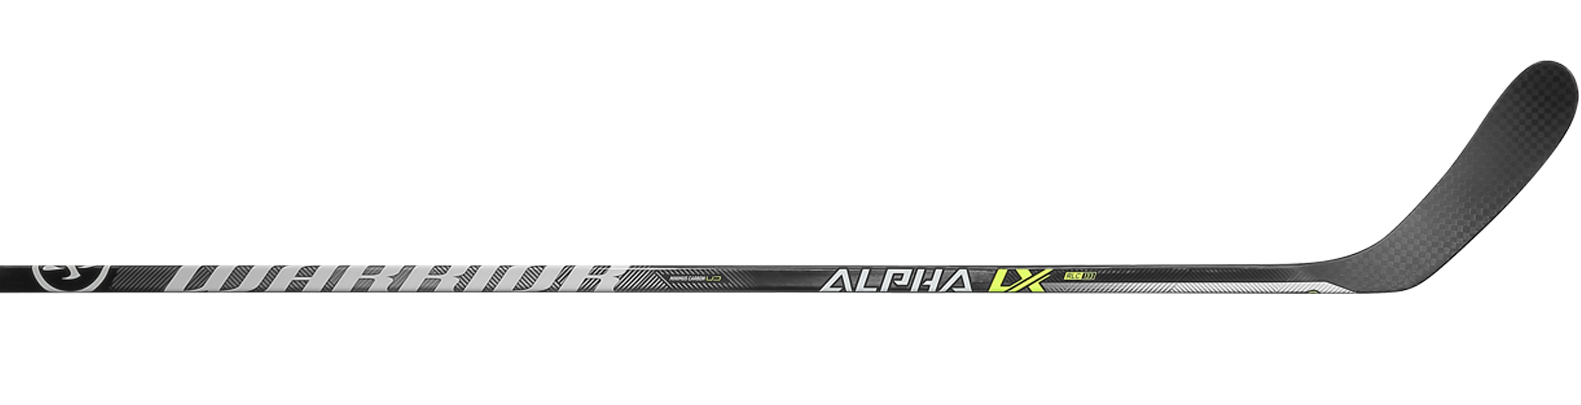 Warrior Alpha LX 30 Bâton de Hockey Intermédiaire